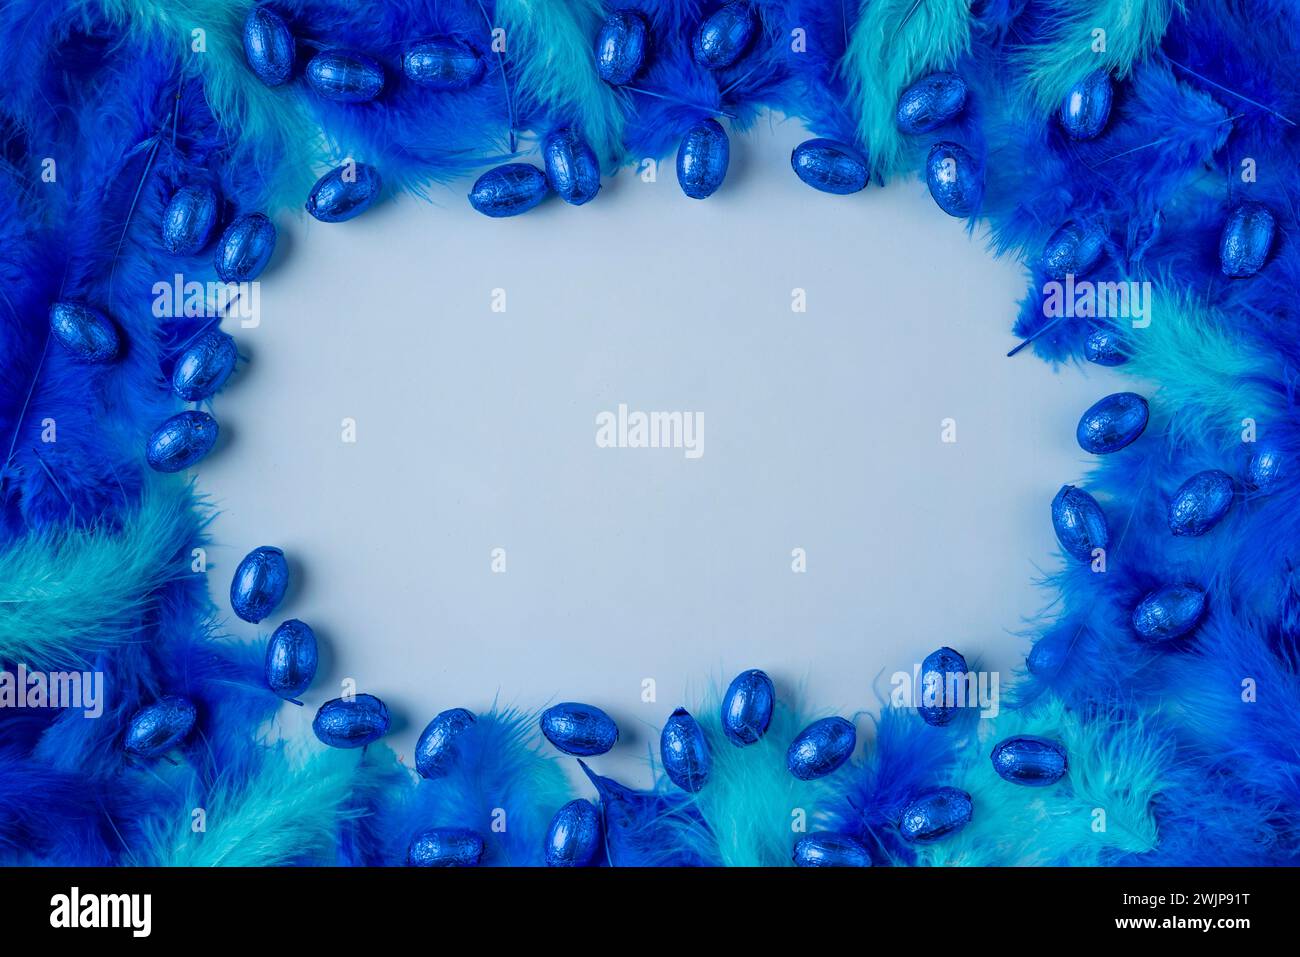 Rahmen aus blauen und türkisfarbenen Federn mit blauen Schokoladeneiern auf hellblauem Hintergrund Stockfoto